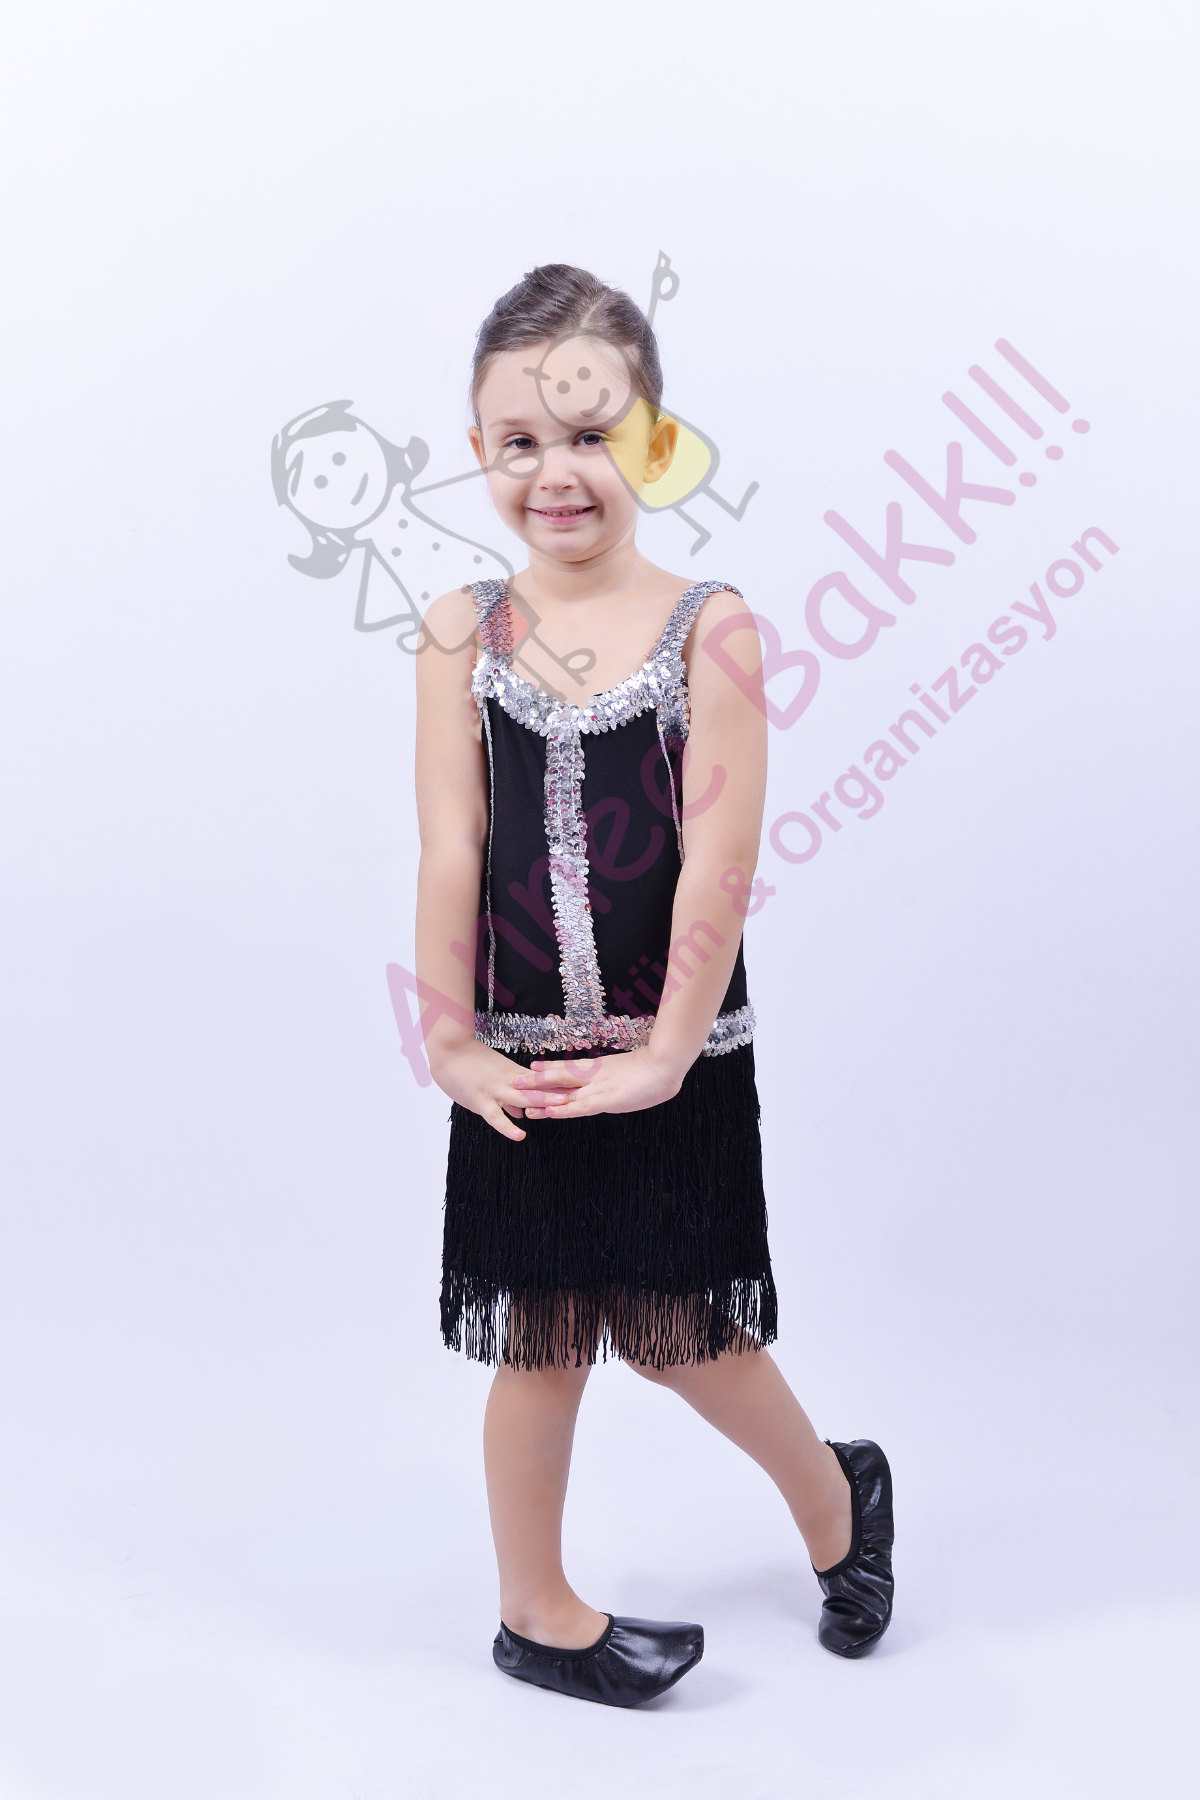 Siyah Renk Püsküllü Dans Kostümü, Kız Çocuklarına Özel Püsküllü Dans Kıyafeti